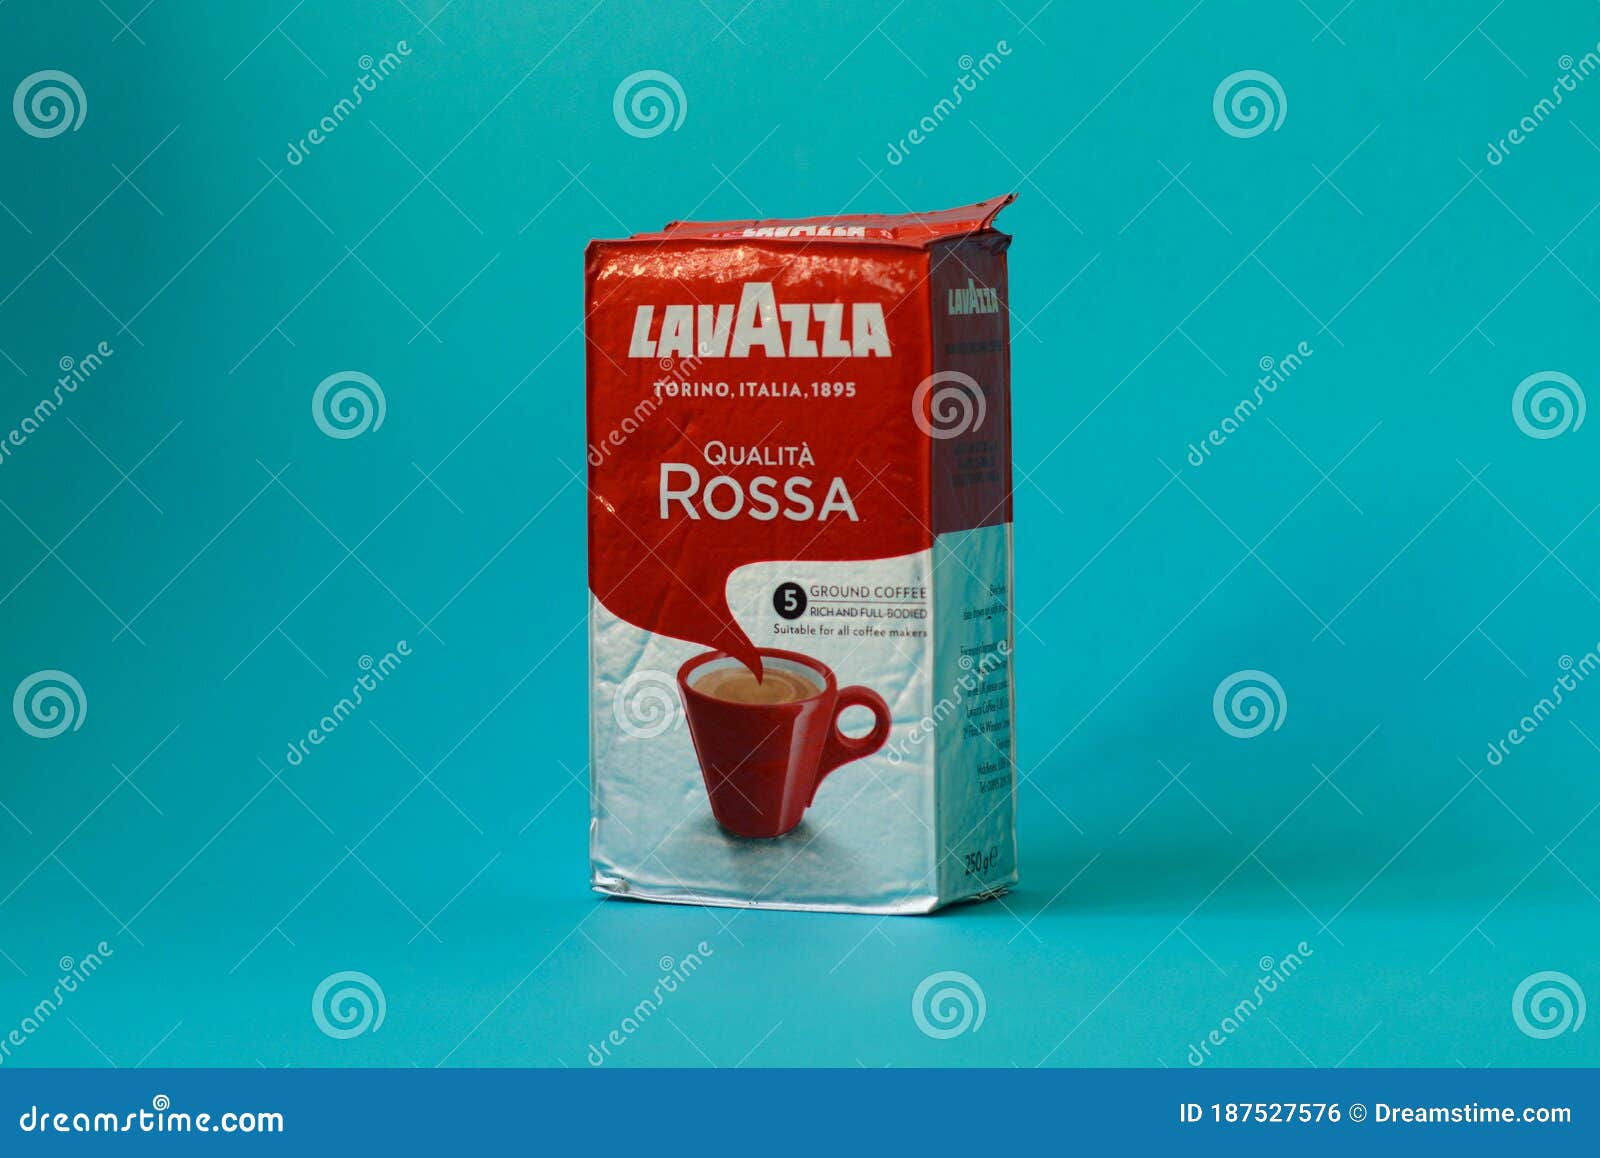 Café molido Lavazza 'Qualità Rossa